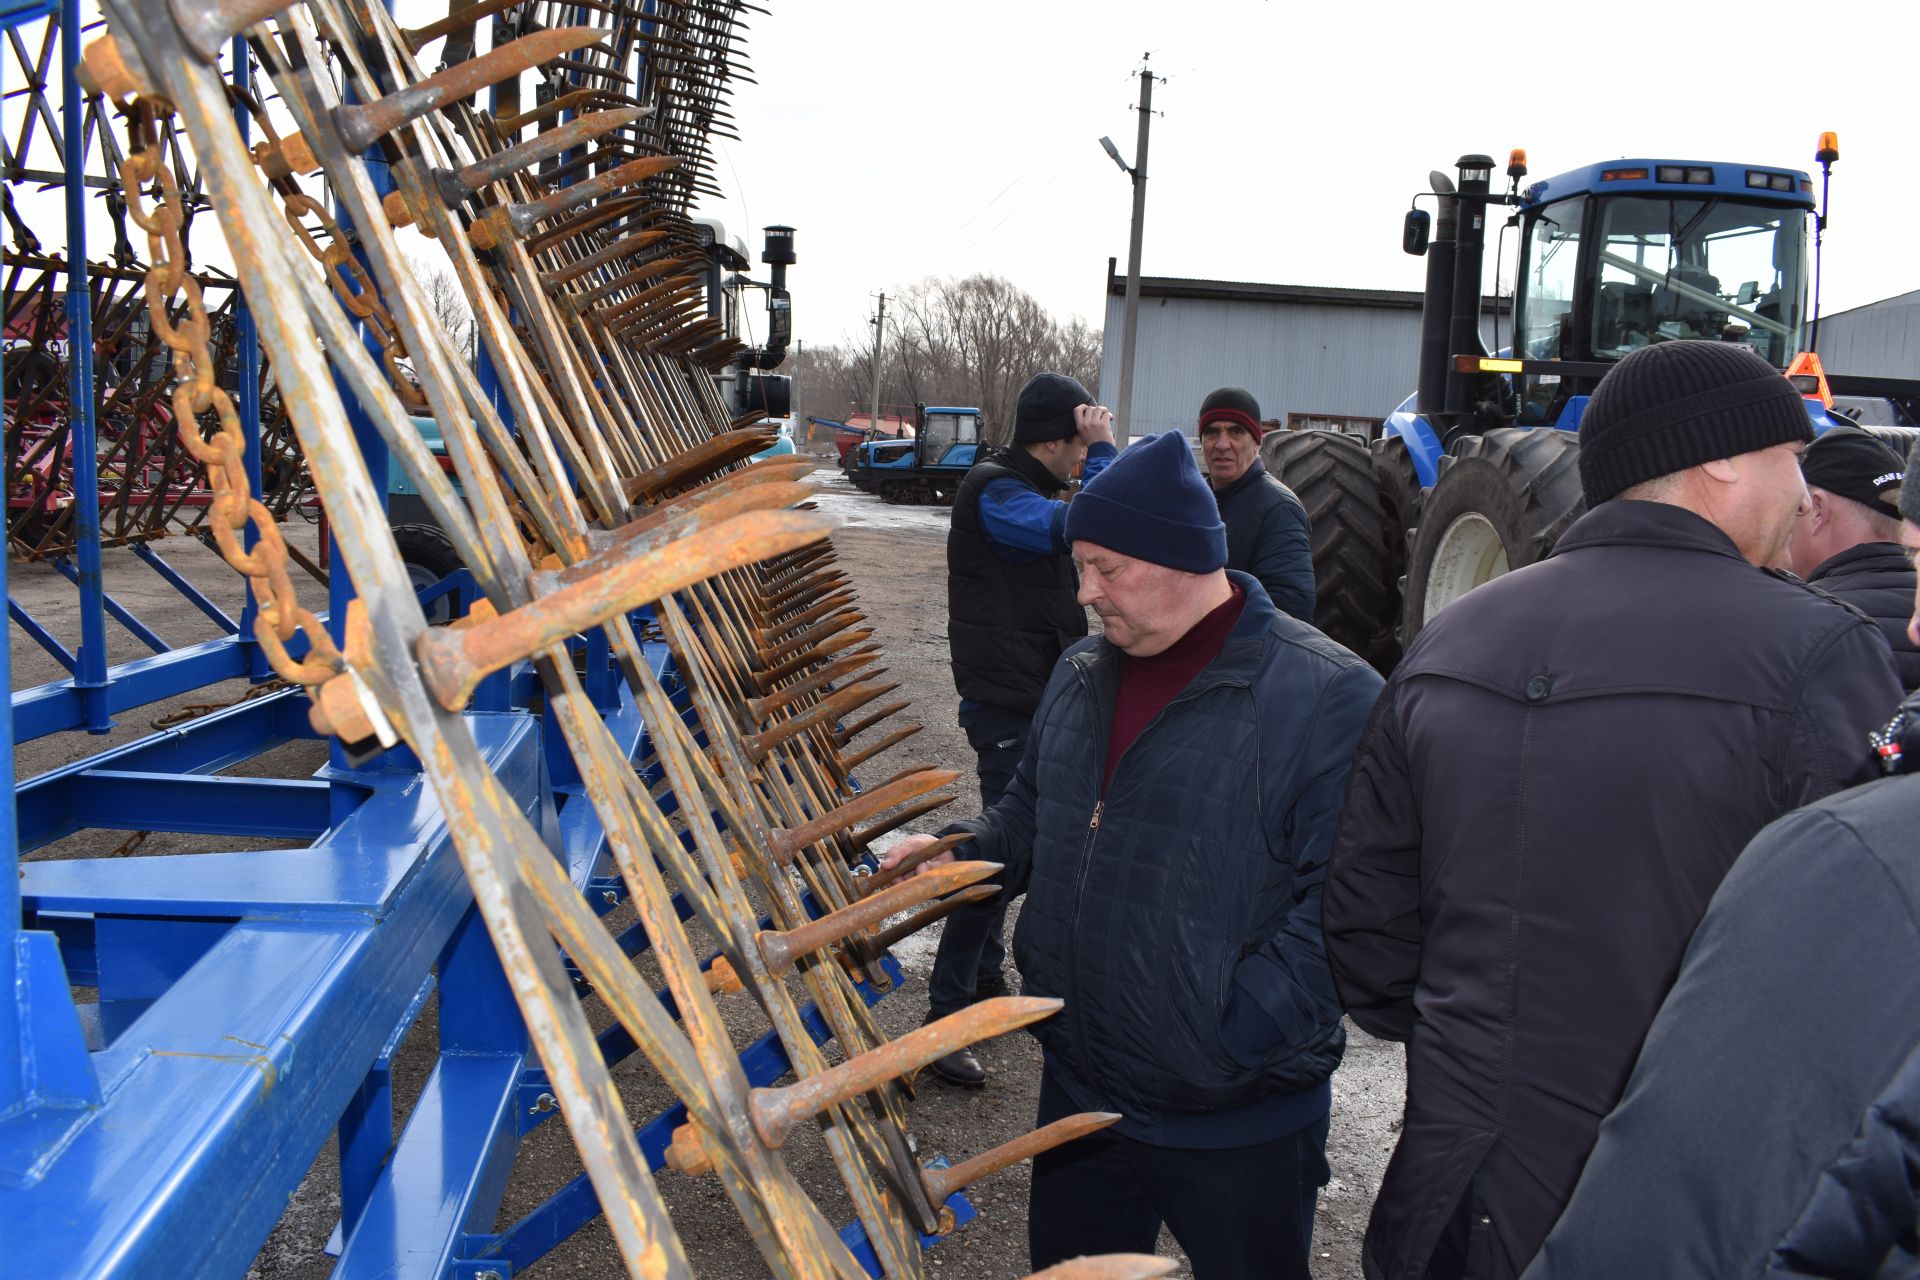 Глава Алексеевского района перед началом весенне-полевых работ встретился с механизаторами